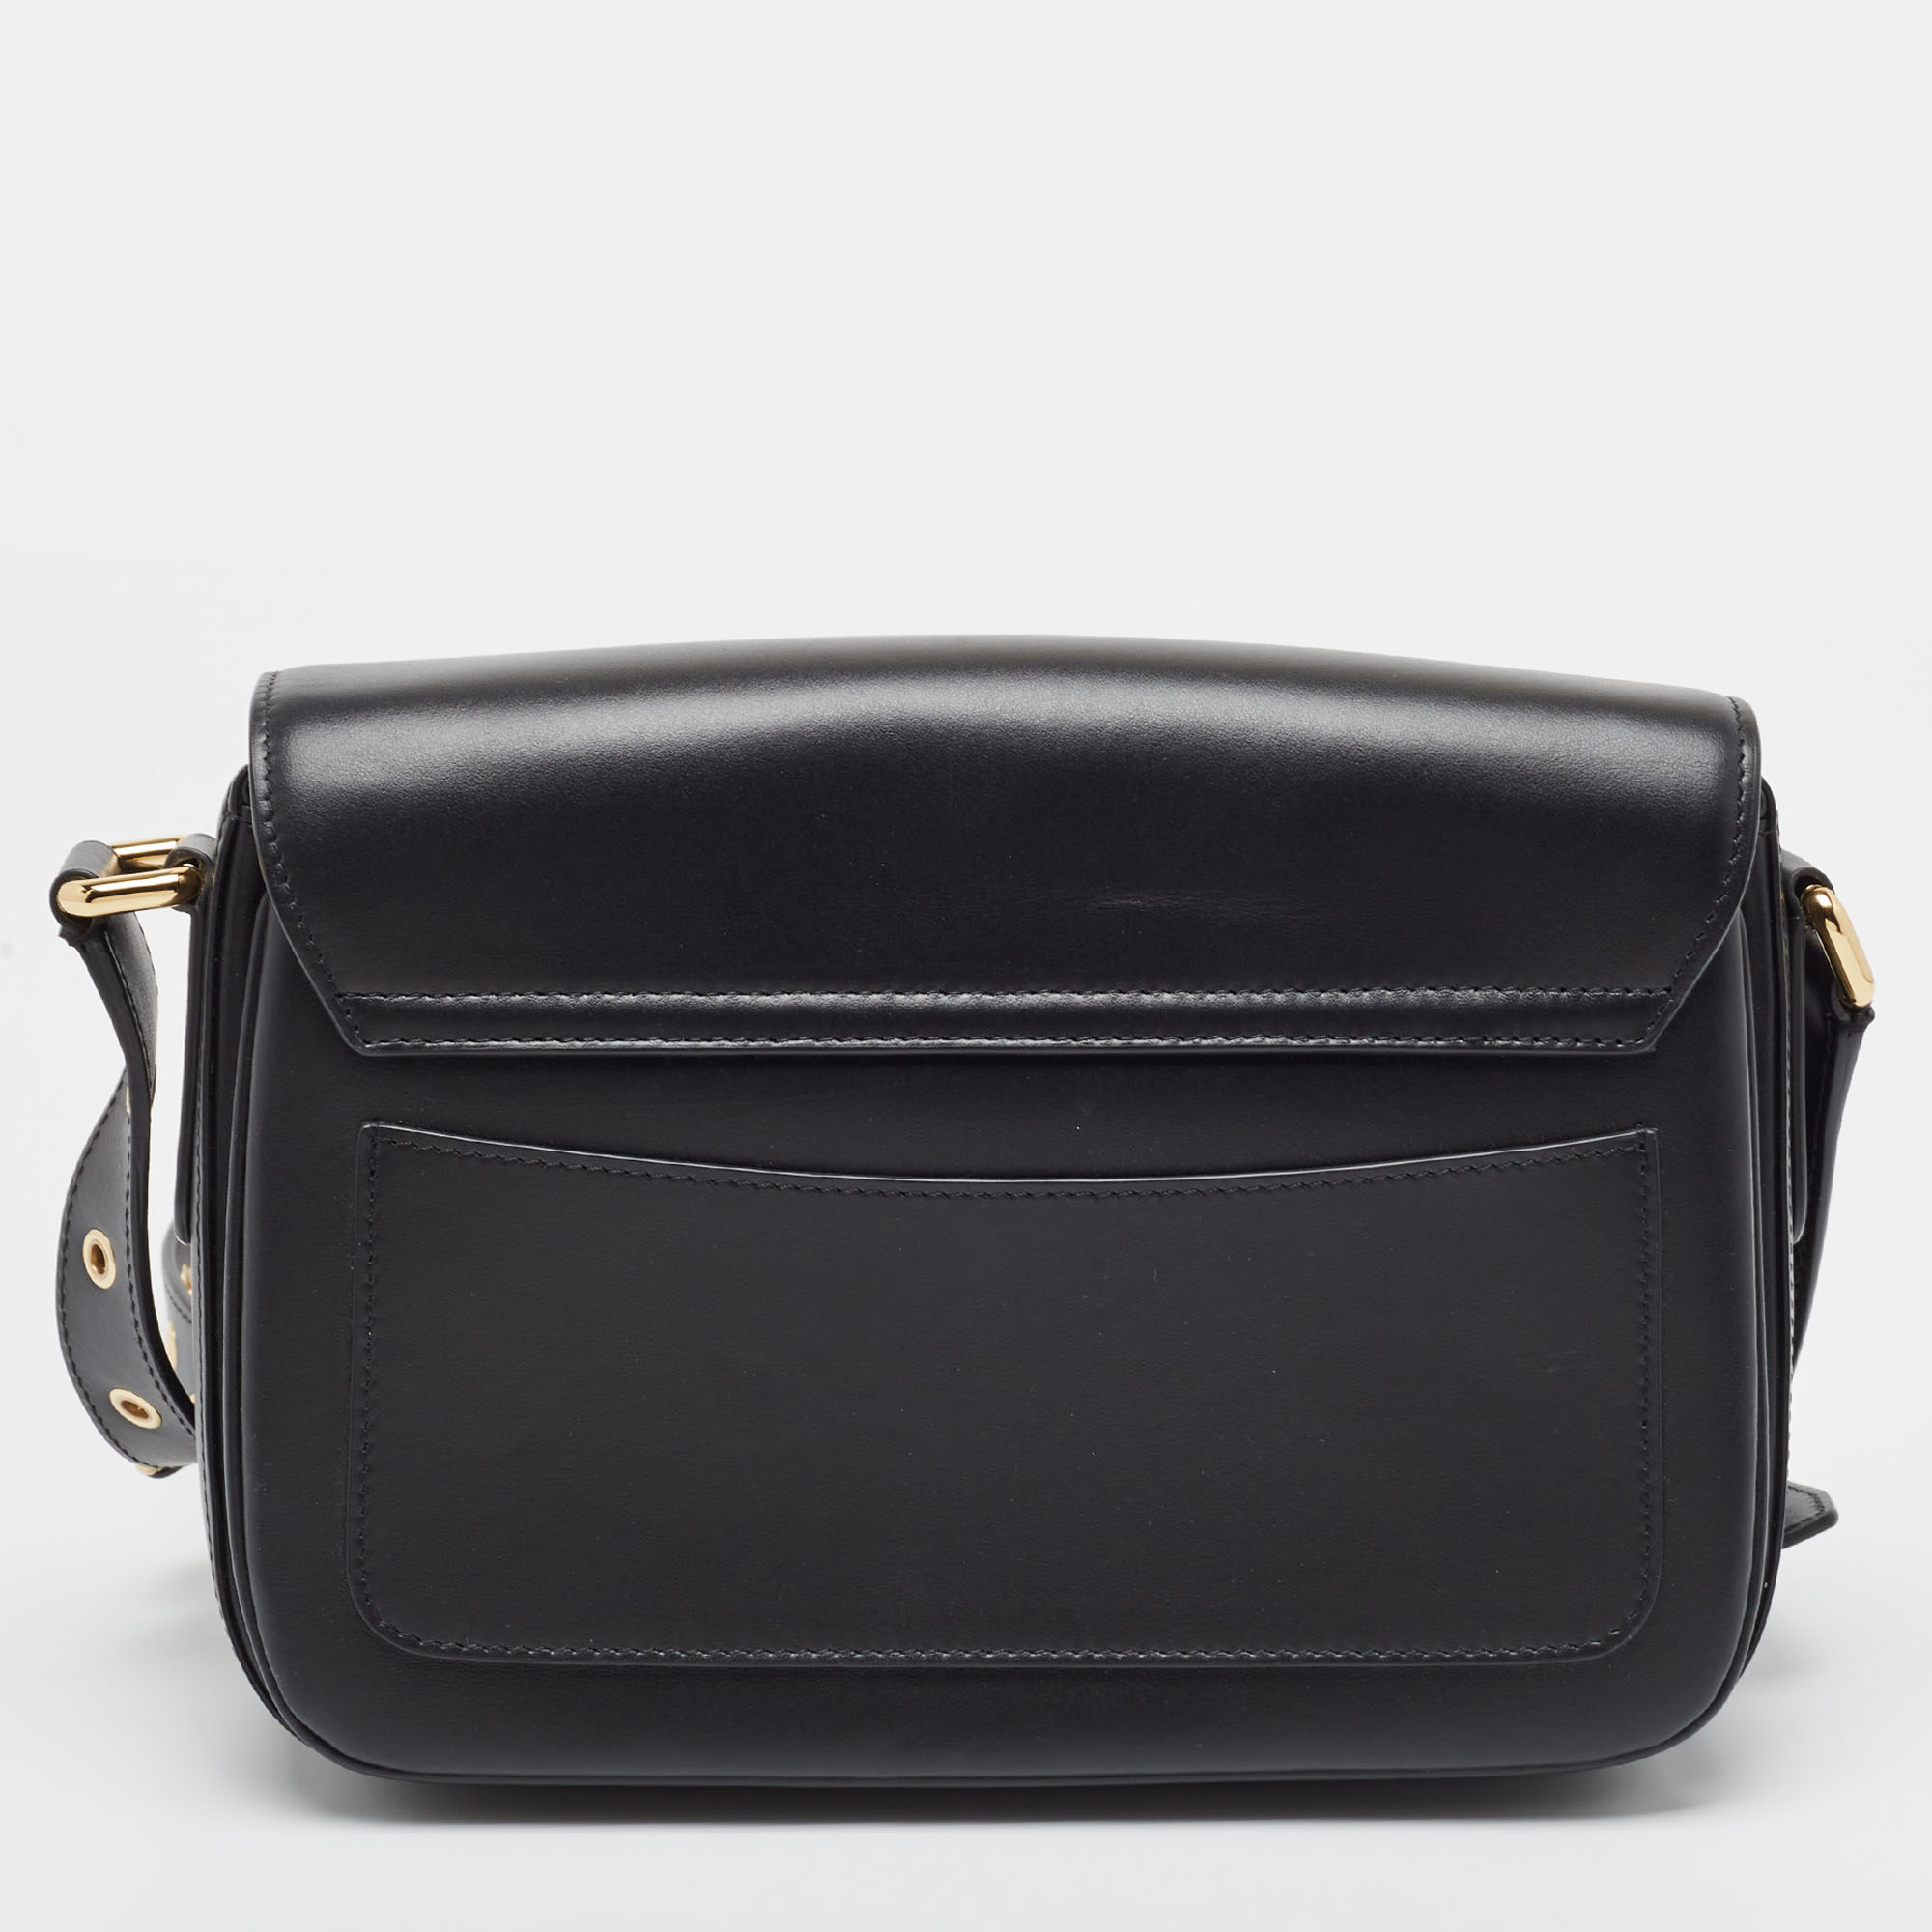 Dolce & Gabbana Black Leather DG Millennials Shoulder Bag